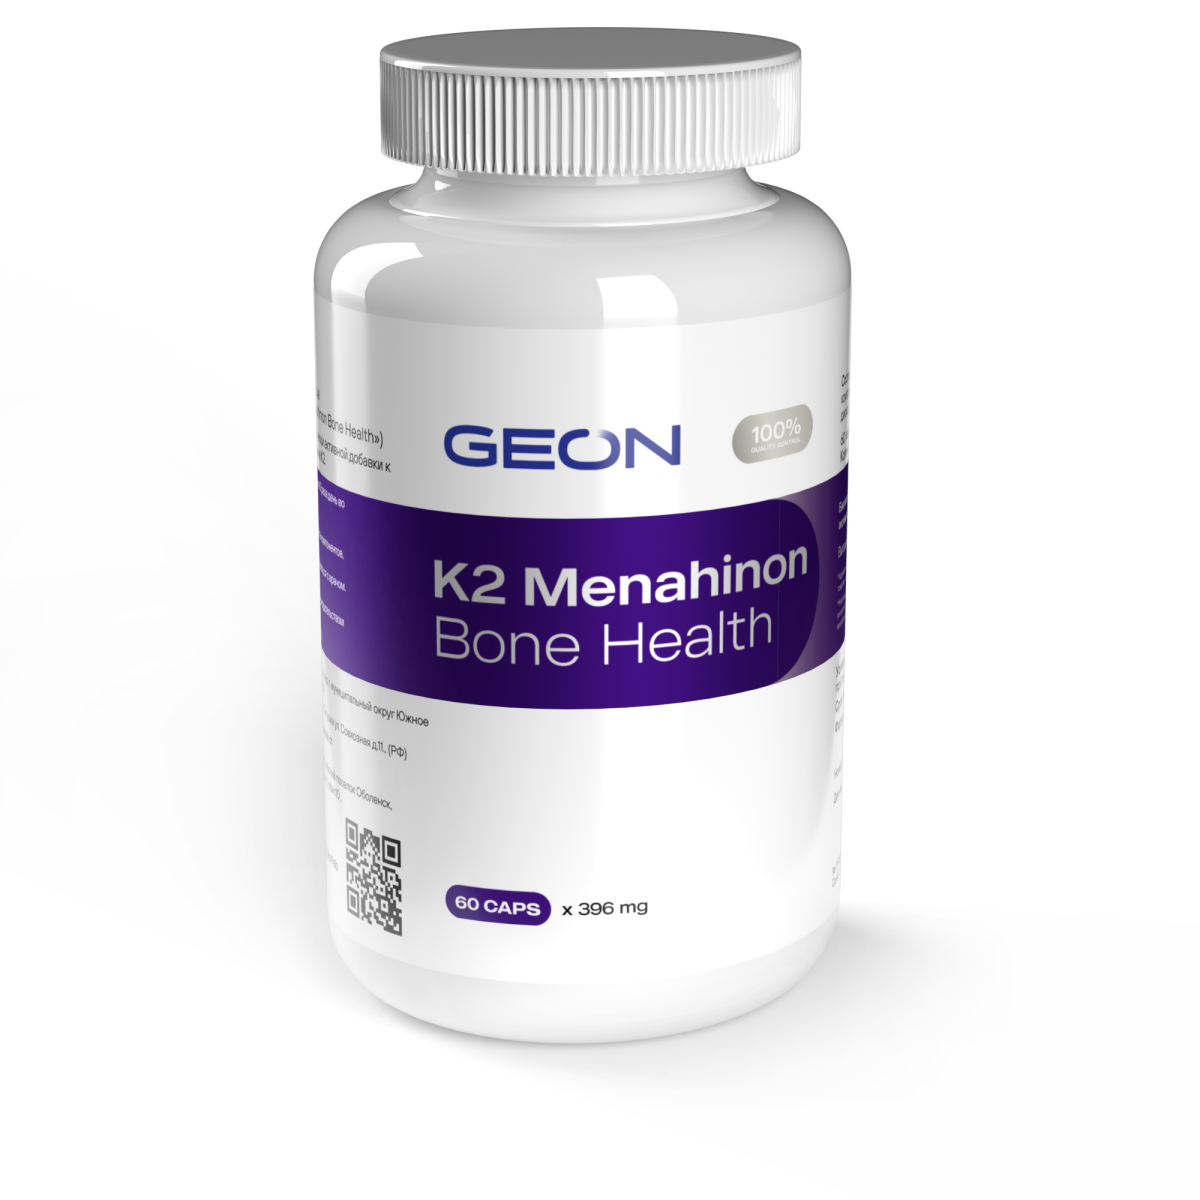 Витамин для здоровья костей GEON K2 Menaquinone Bone Health 60 капсул X 396 мг